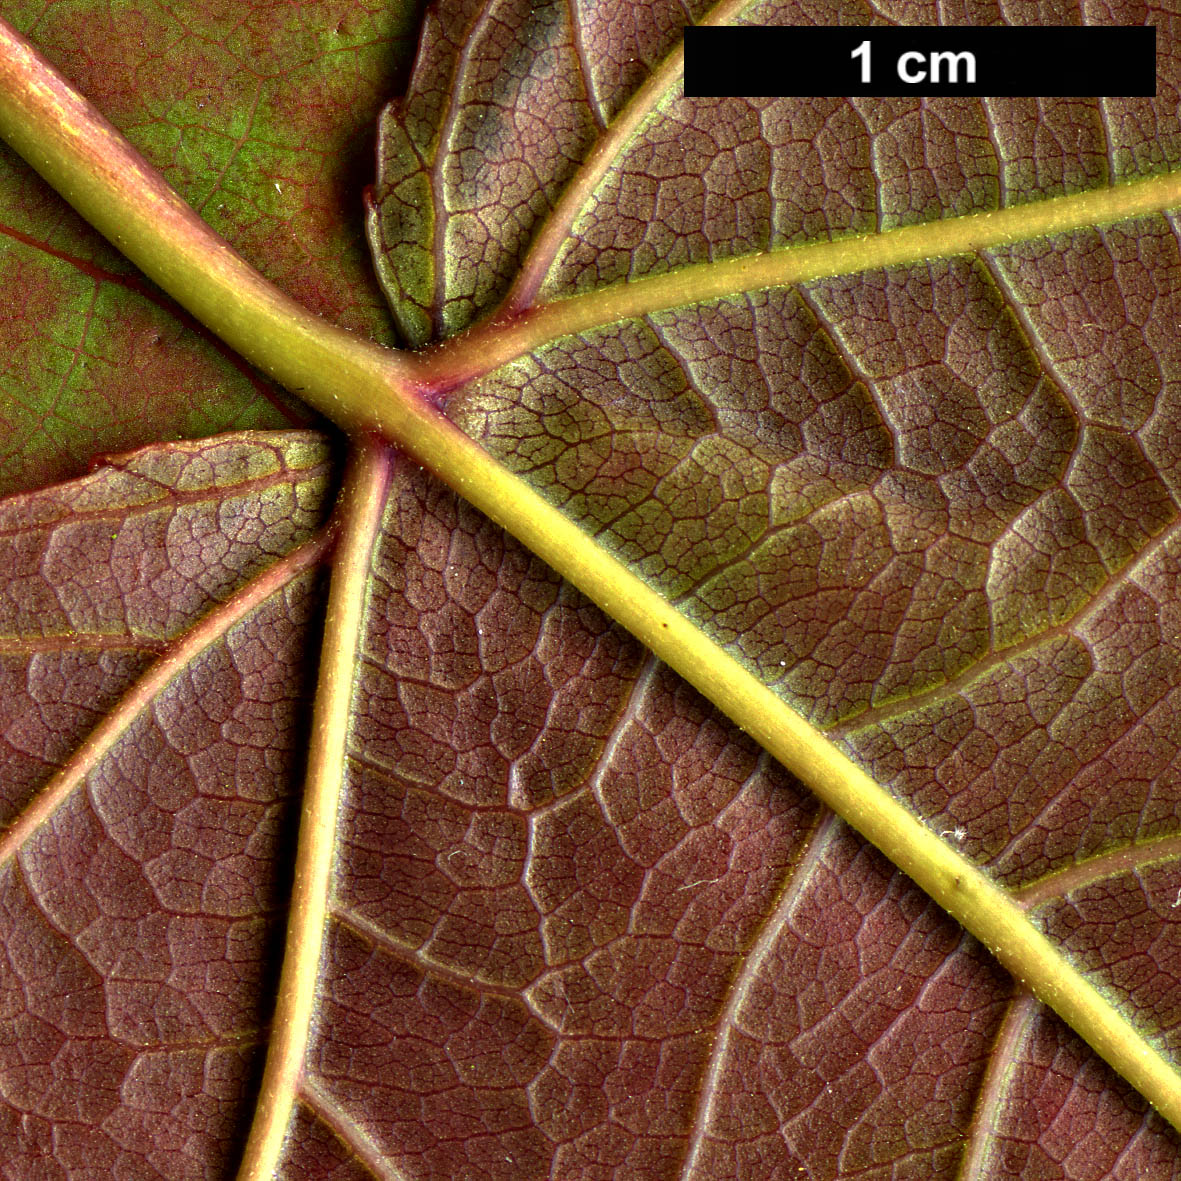 High resolution image: Family: Altingiaceae - Genus: Liquidambar - Taxon: acalycina